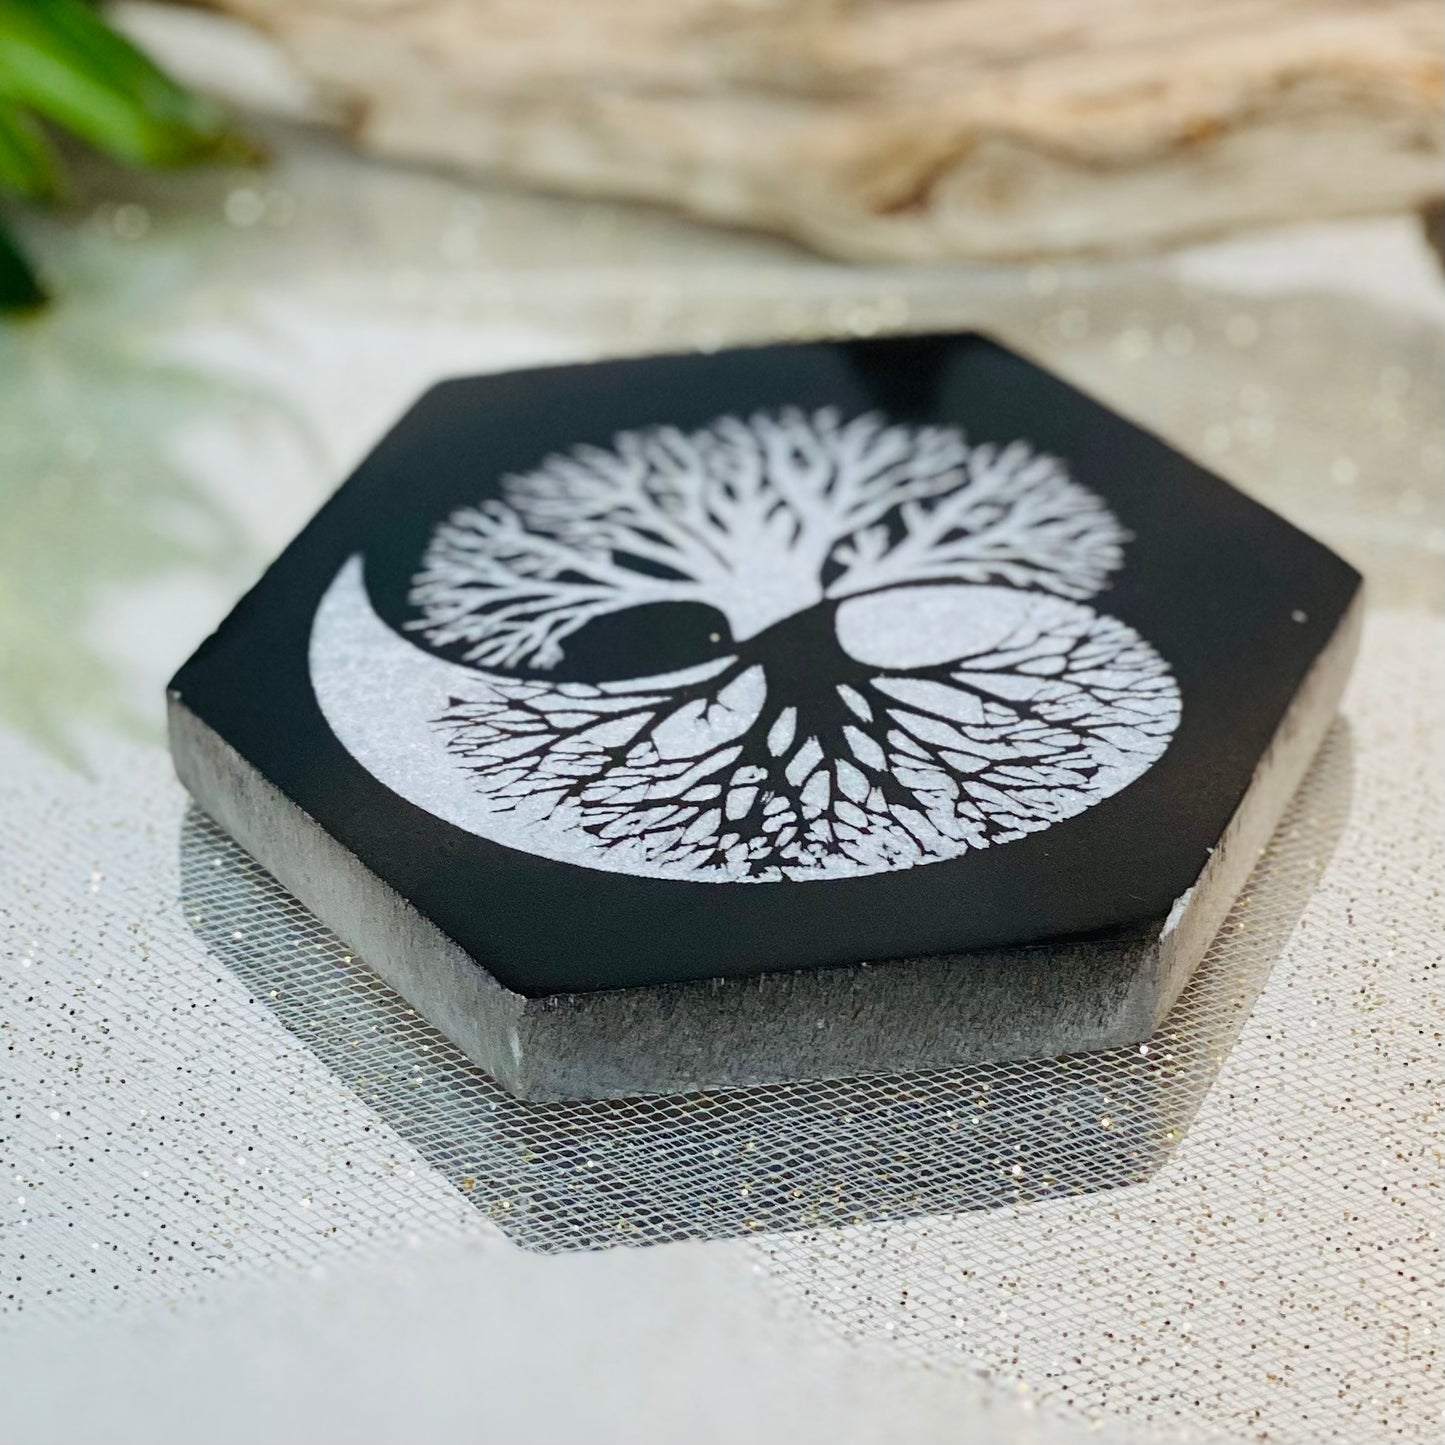 Ethereal Elegance: Hexagon Black & White Carved Selenite Plate